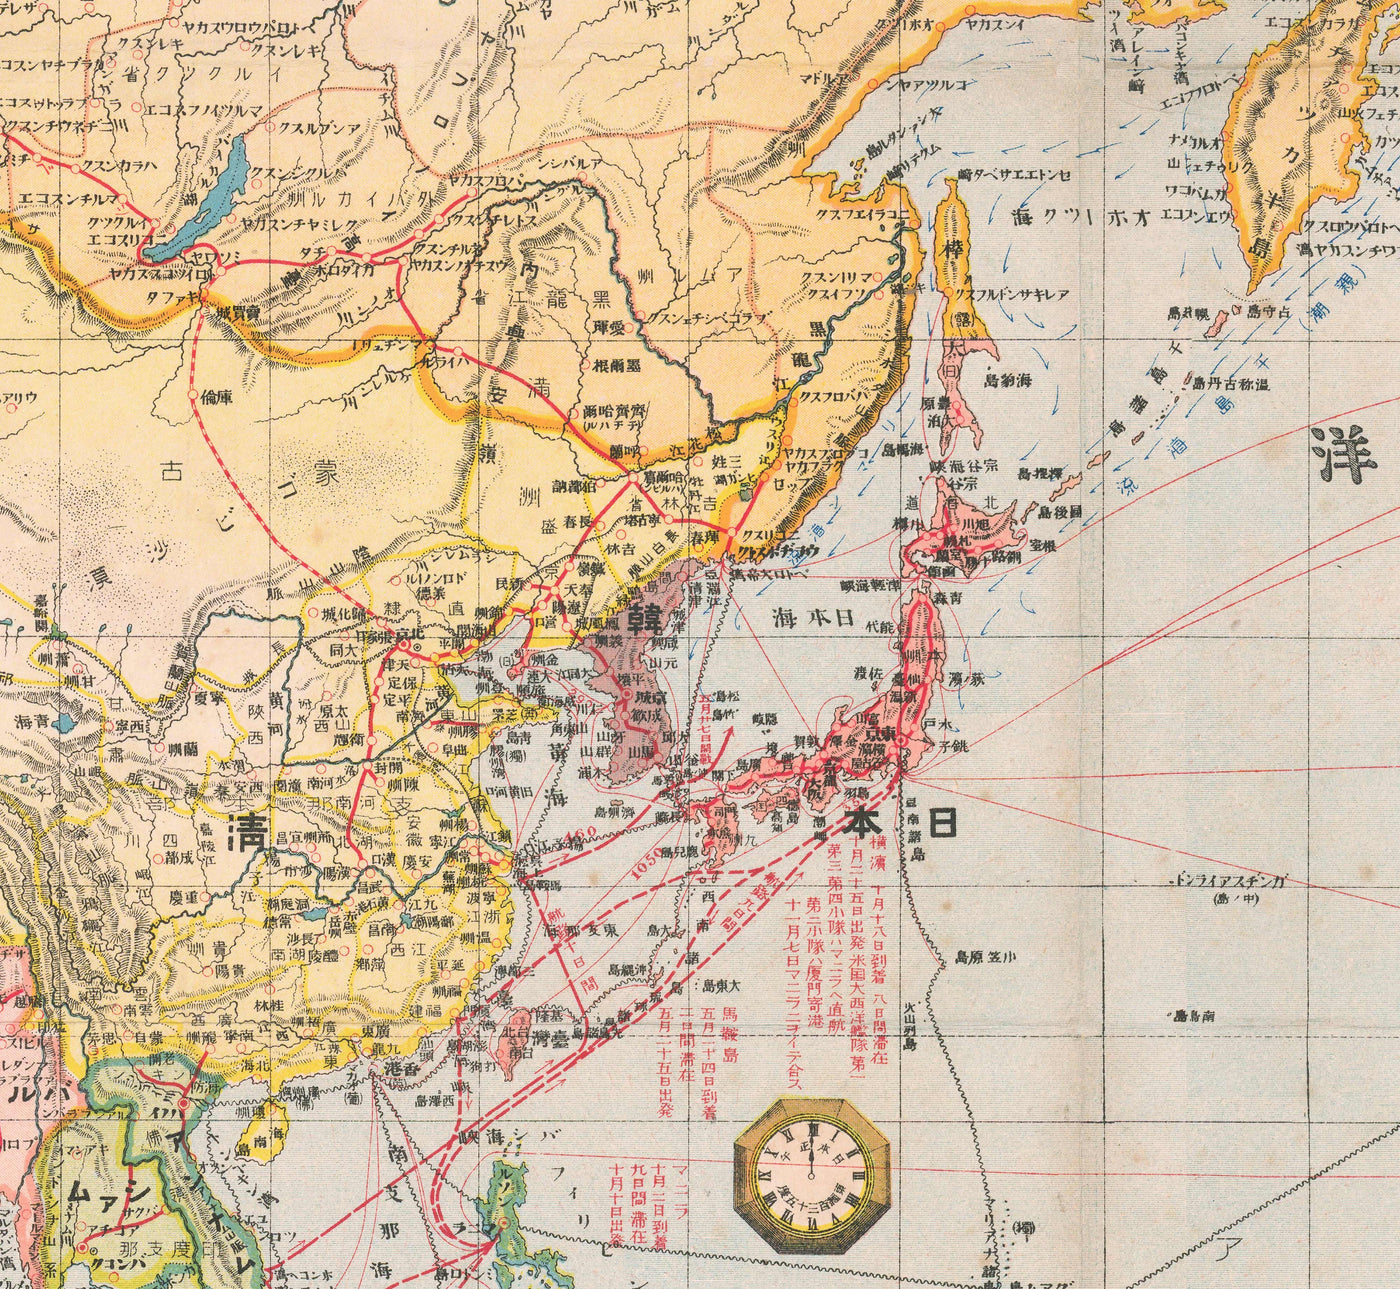 Antiguo mapa japonés del mundo, 1910 - Atlas grande y raro - Japón, vías de navegación, corrientes, marina mercante, ferrocarriles